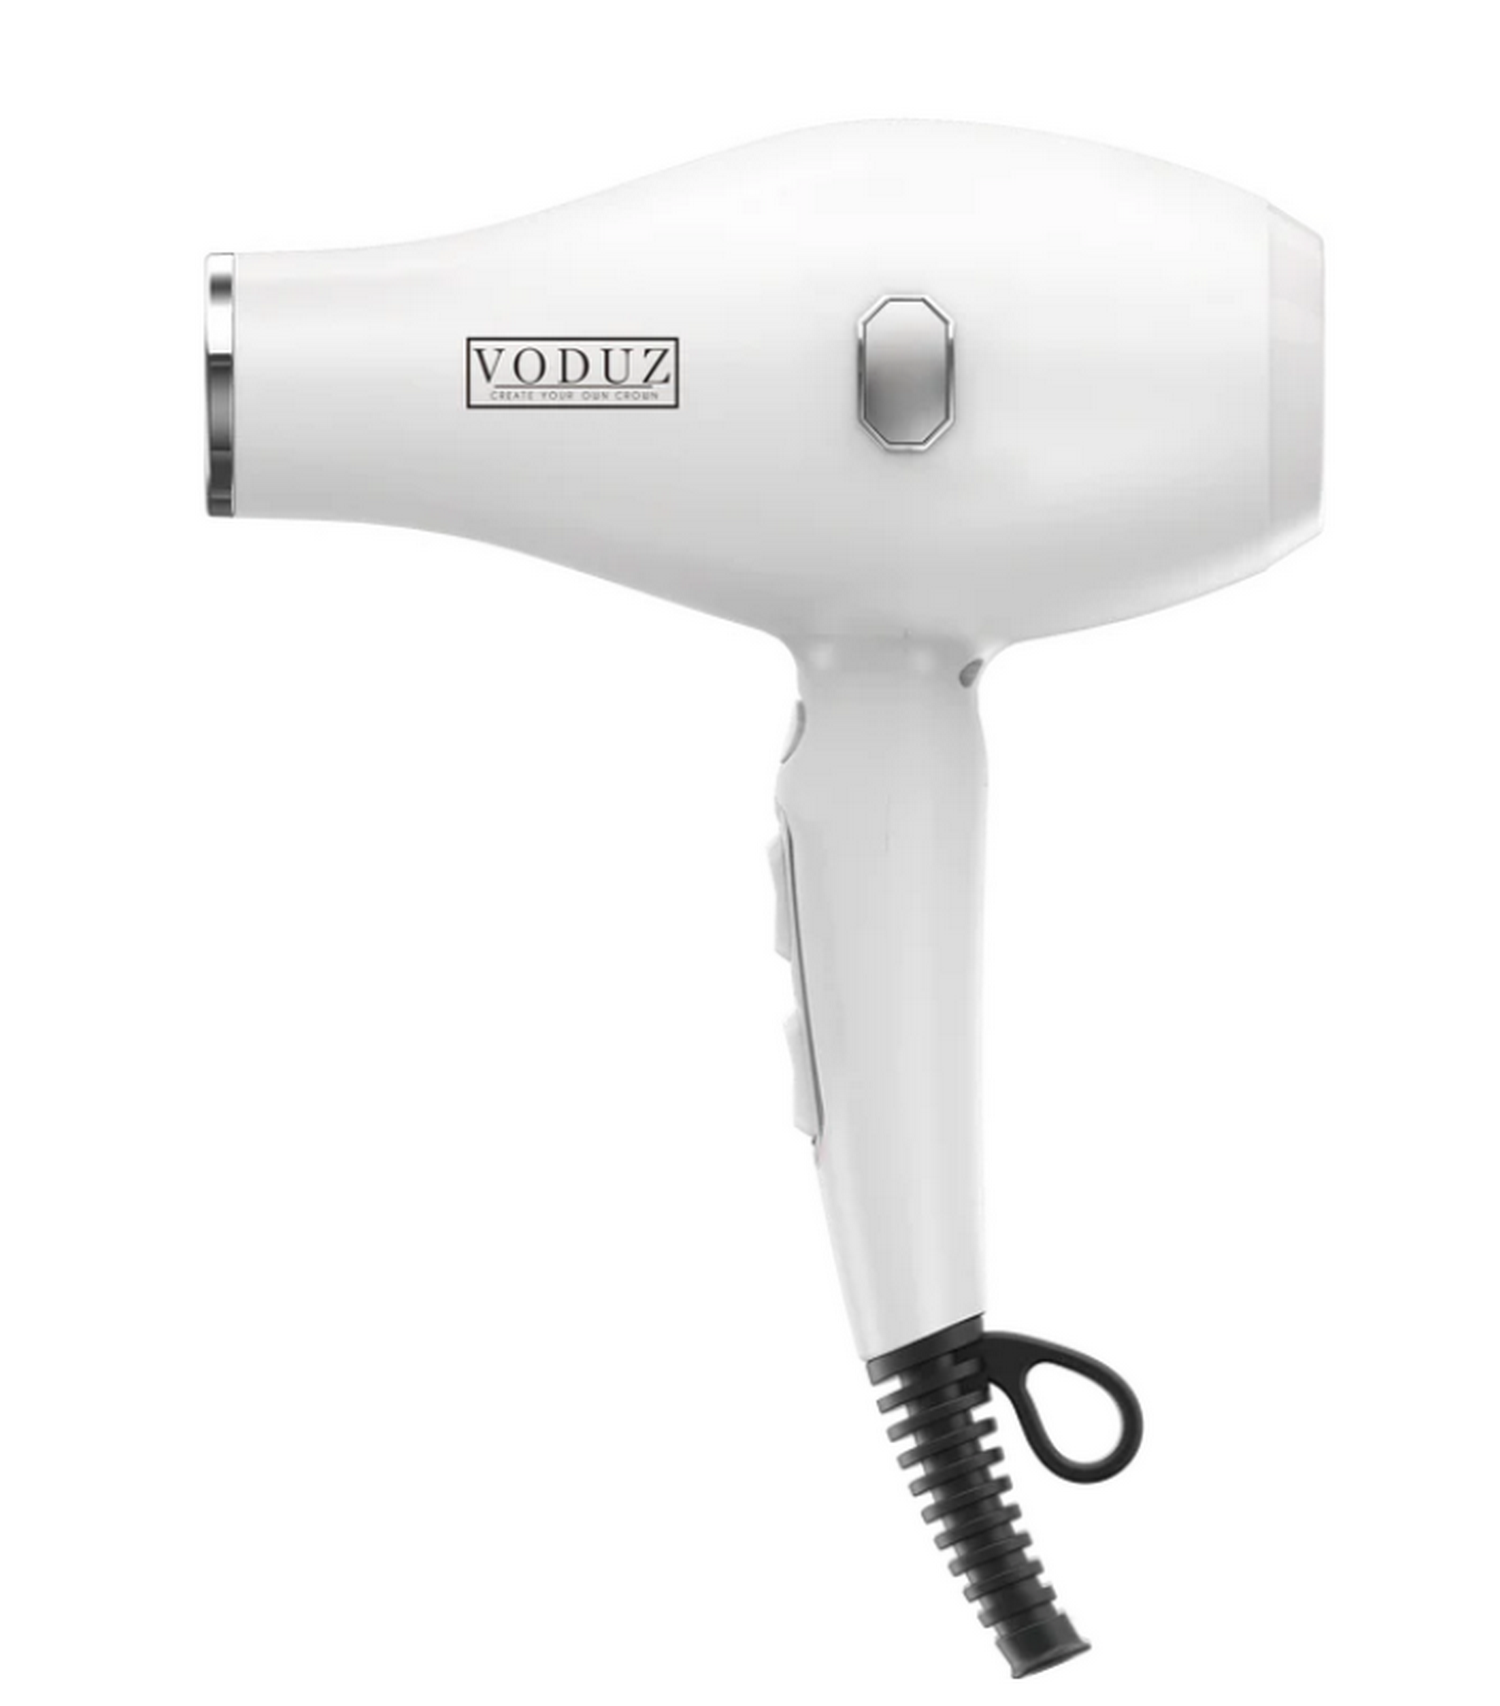 Voduz Blow Out Infrared Hair Dryer - White